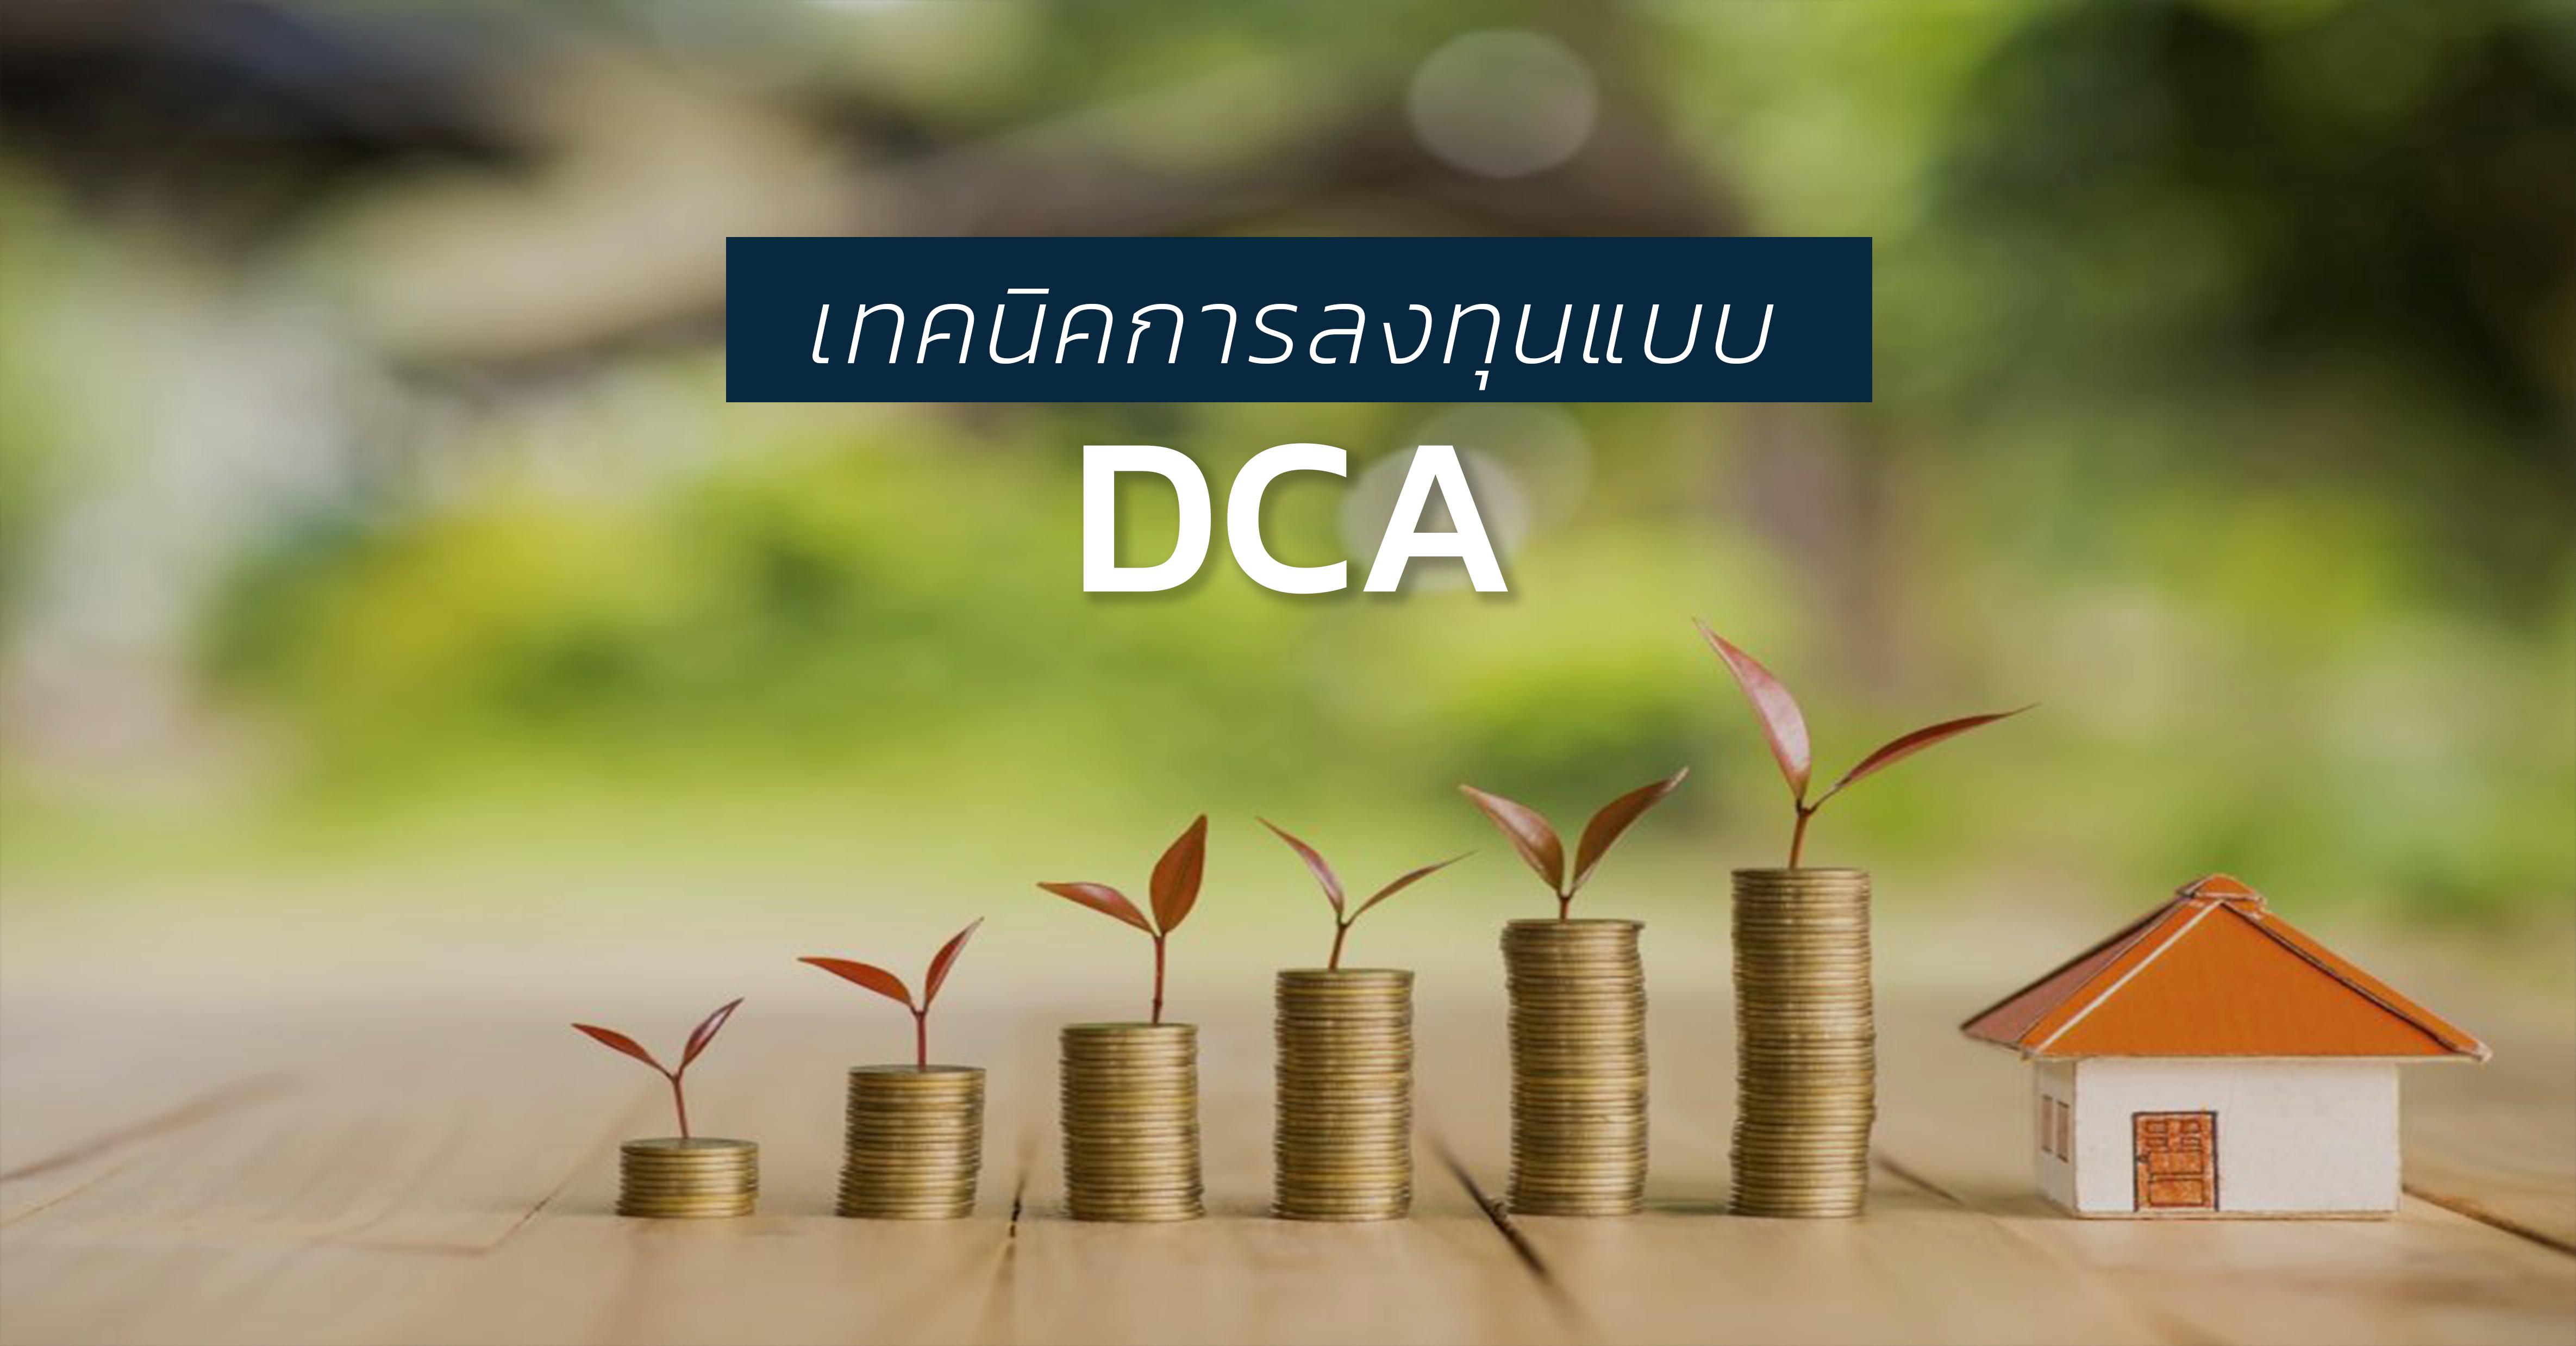 รูปบทความ เทคนิคในการลงทุนแบบ DCA ก้าวเล็กๆสู่ความมั่นคงทางการเงิน